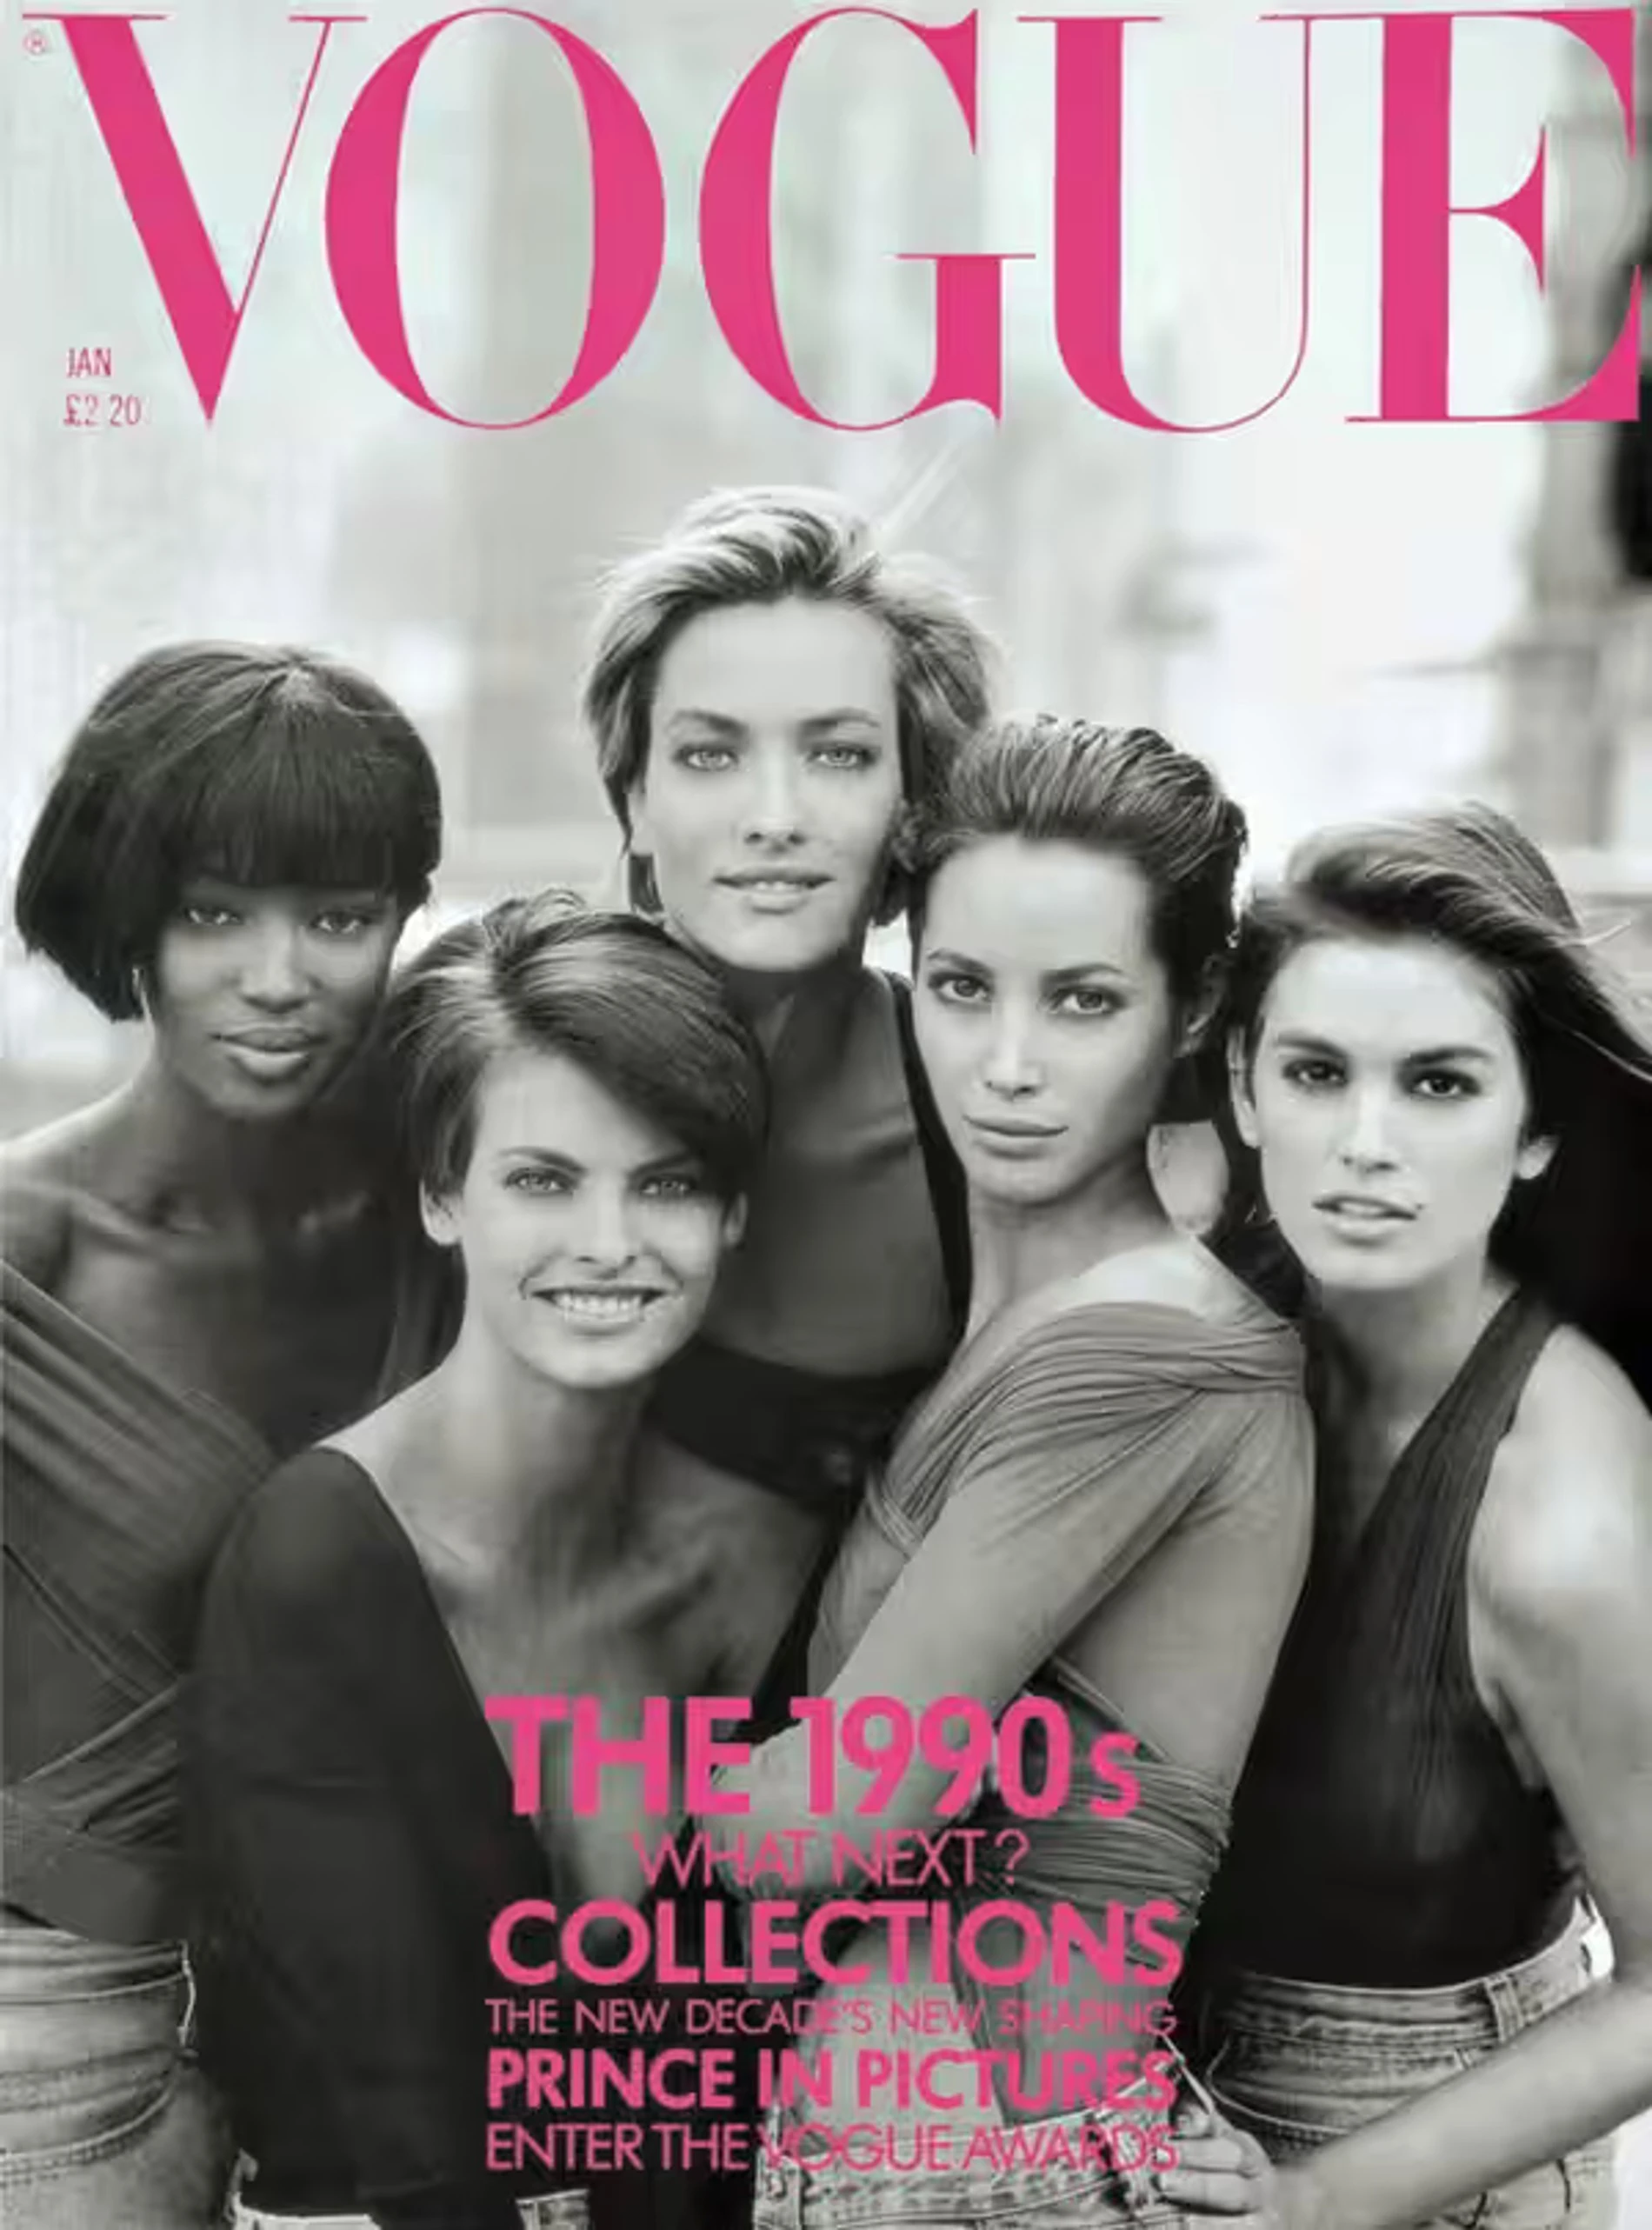 Наоми Кэмпбелл, Линда Евангелиста, Татьяна Патитц, Кристи Терлингтон и Синди Кроуфорд на обложке Vogue в 1990 году. Фото: Vogue 